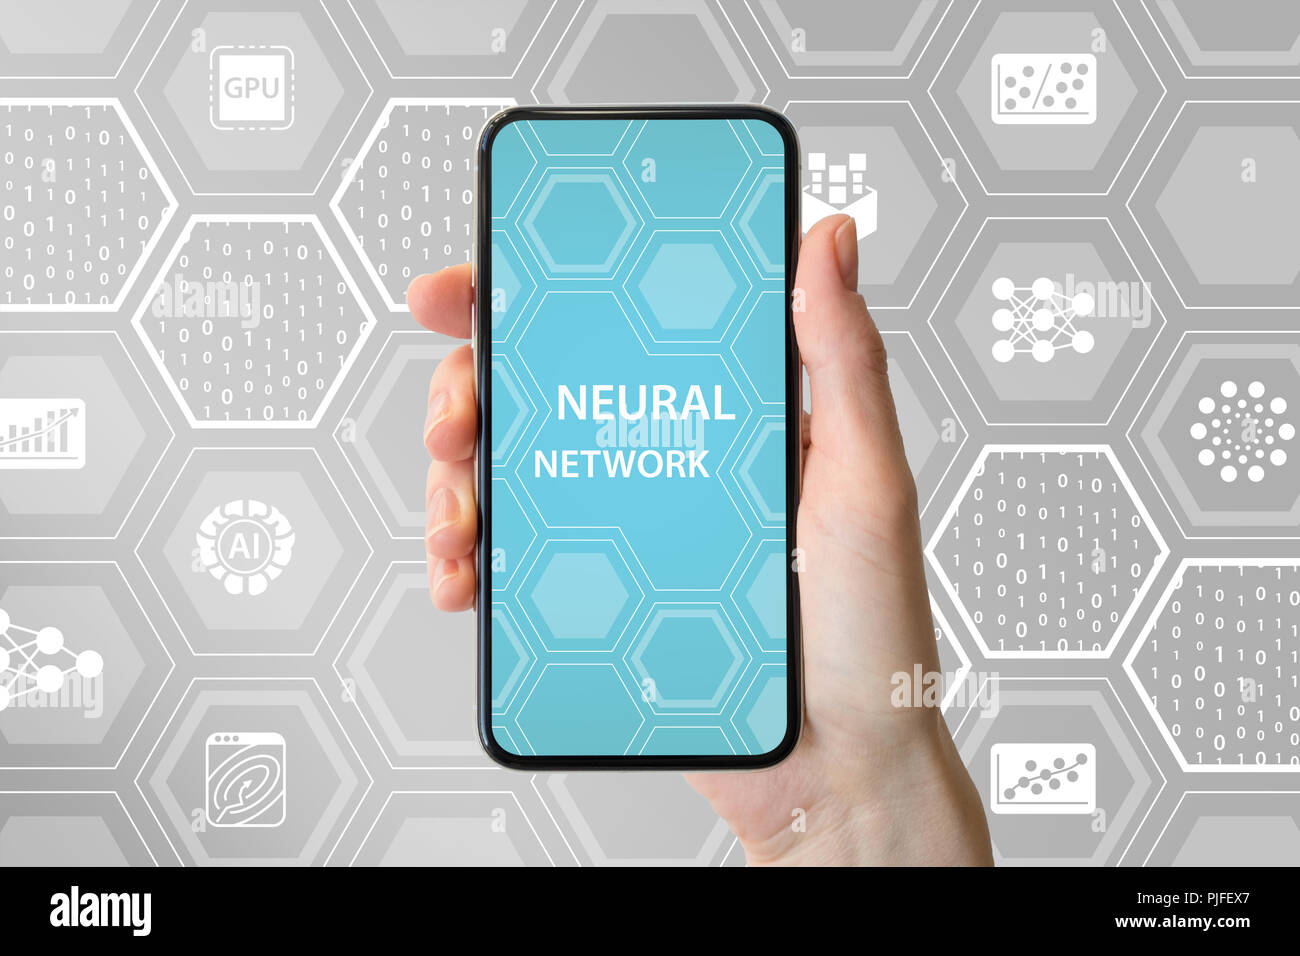 Concept de réseau neuronal profond. Main tenant cadre moderne smart phone libre en face de fond neutre avec des icônes Banque D'Images